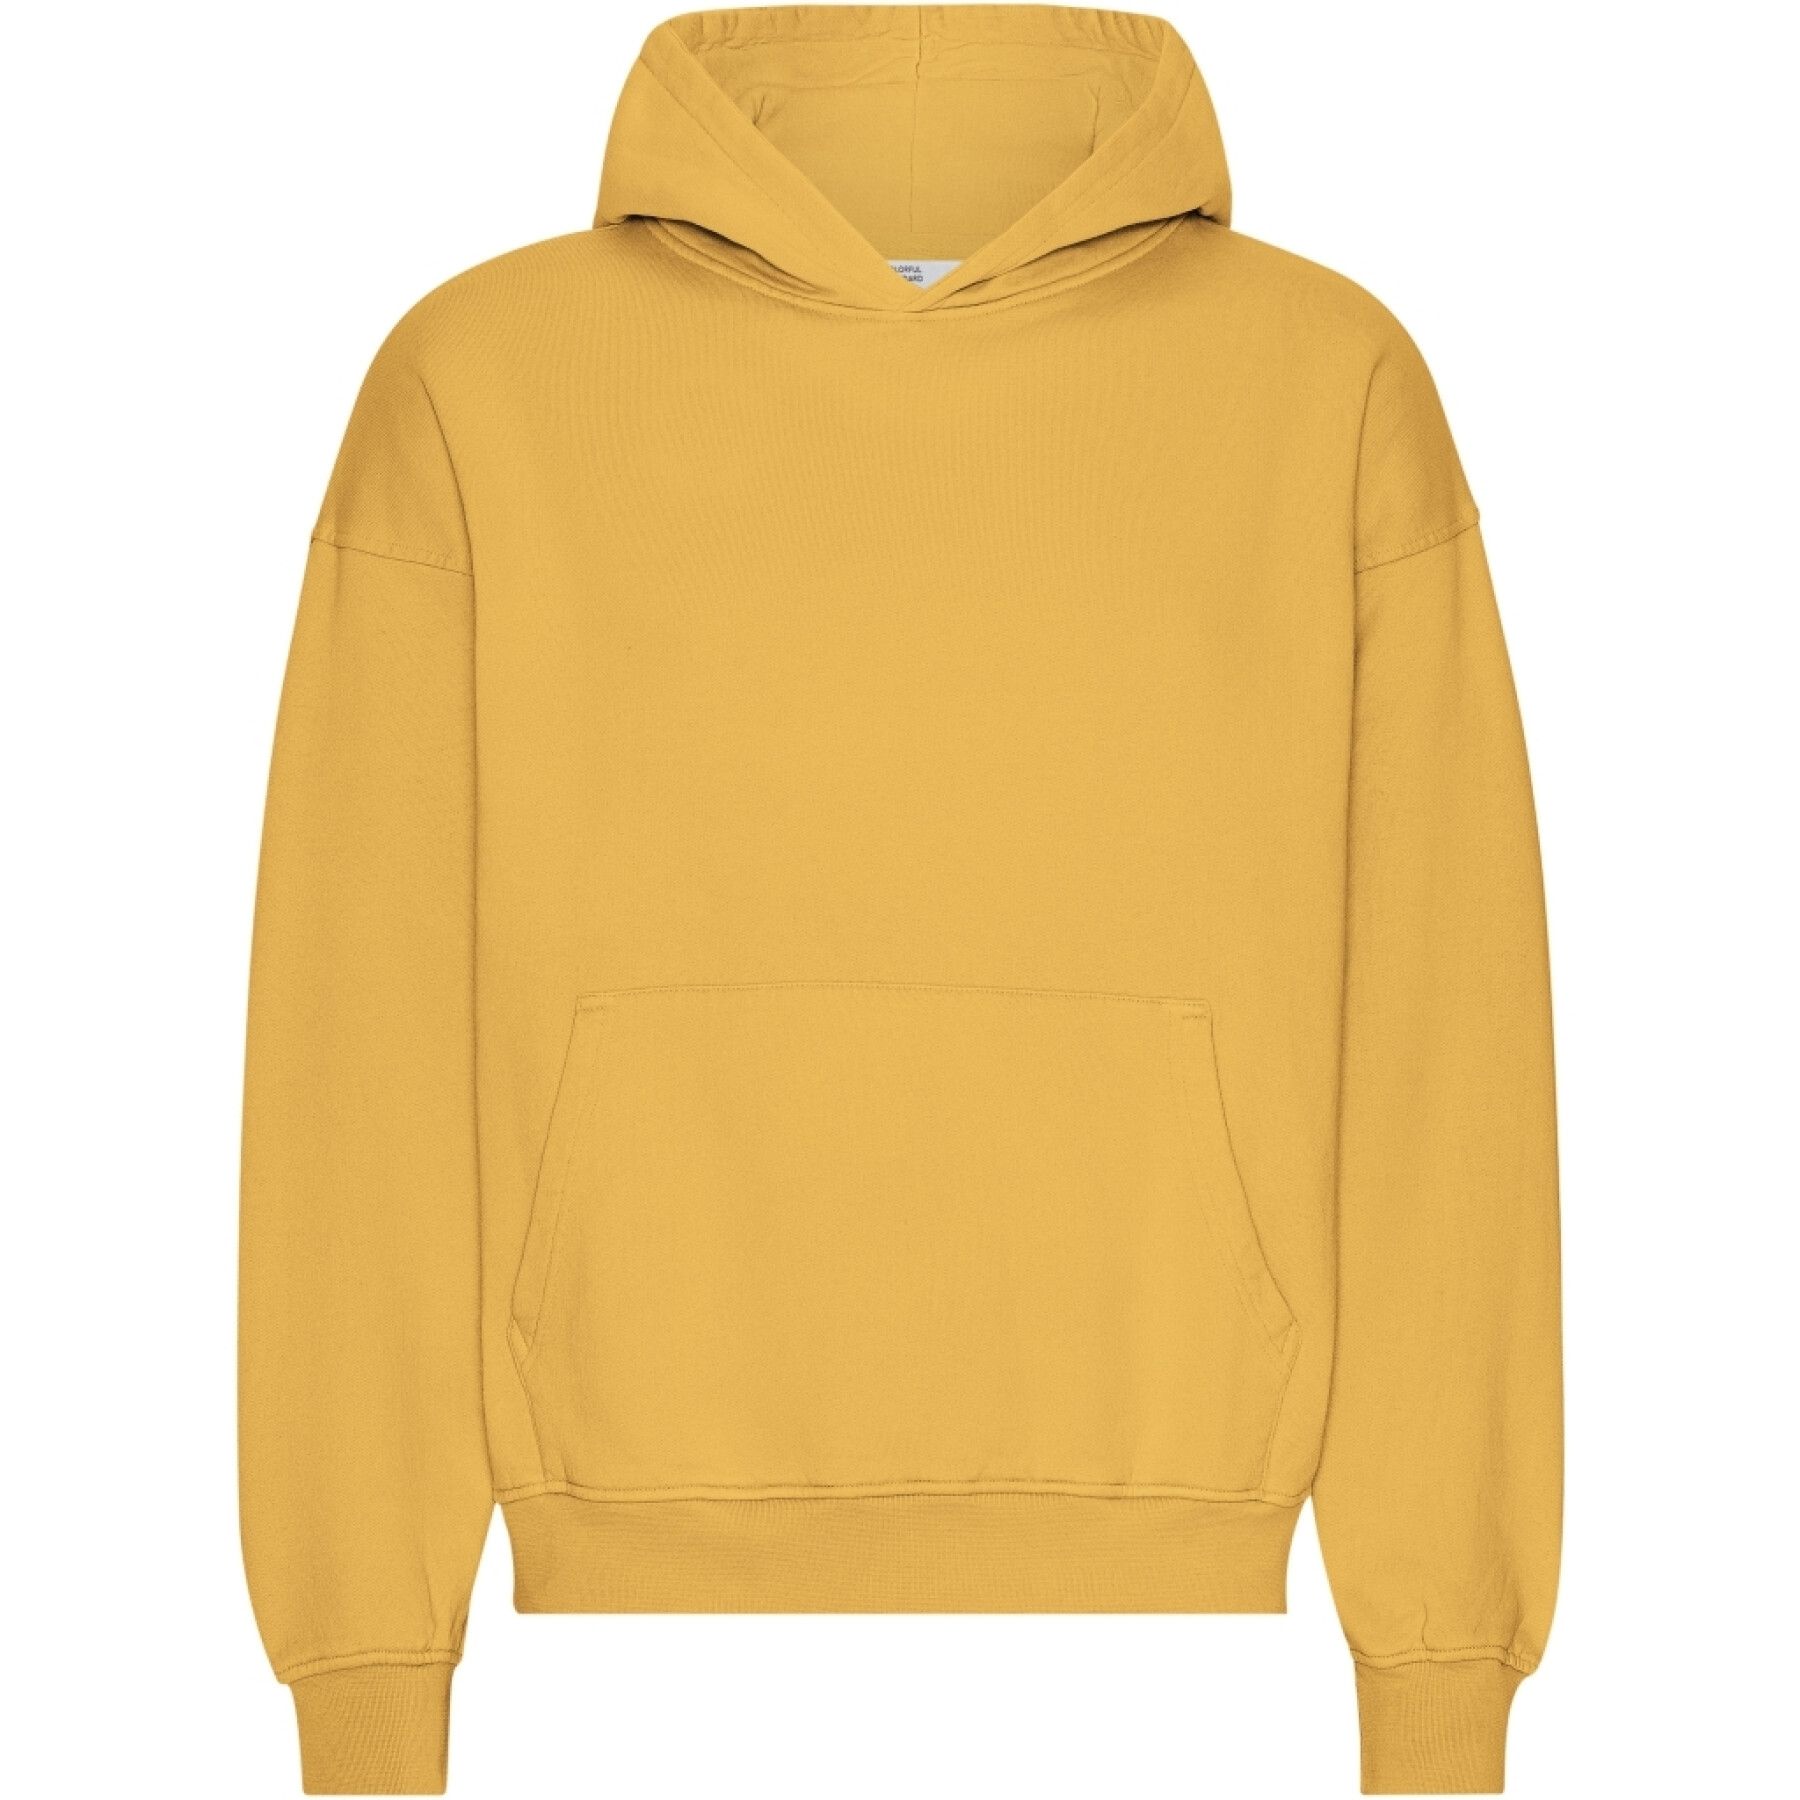 Oversized hooded sweatshirt Colorful Standard Organic Burned Yellow